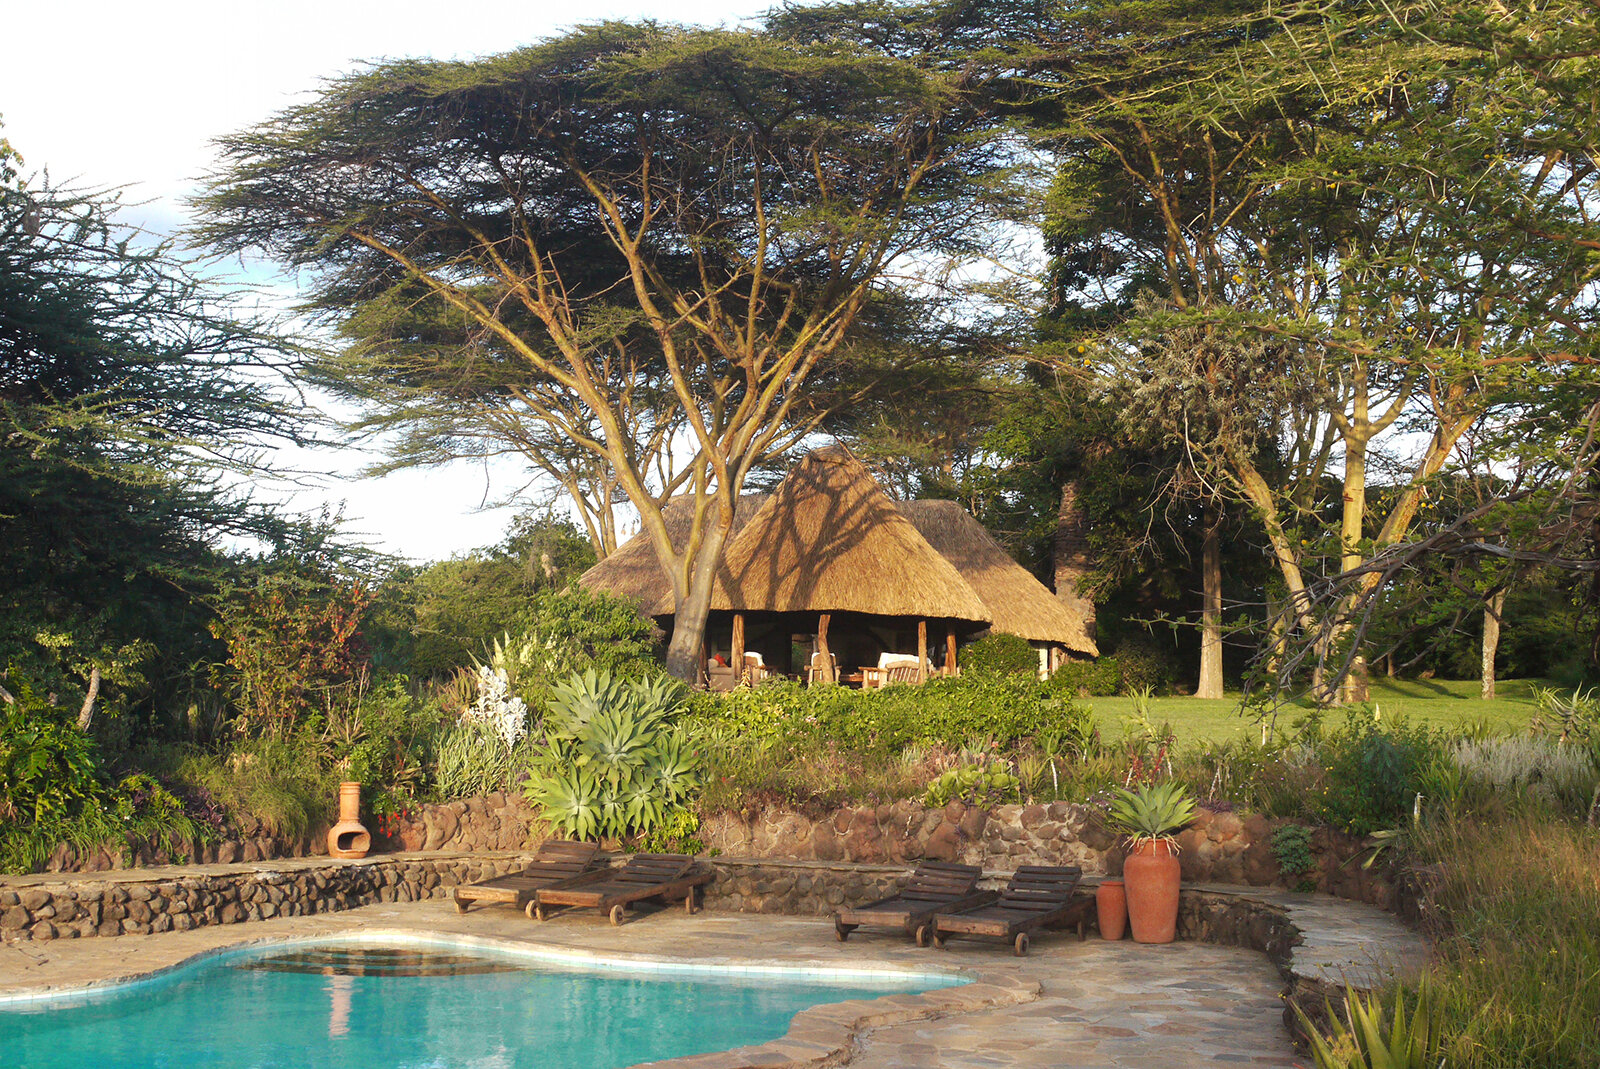 Lewa-House-Laikipia-Plateau-Kenya-Safaris (47)_Tett-Safaris.jpg